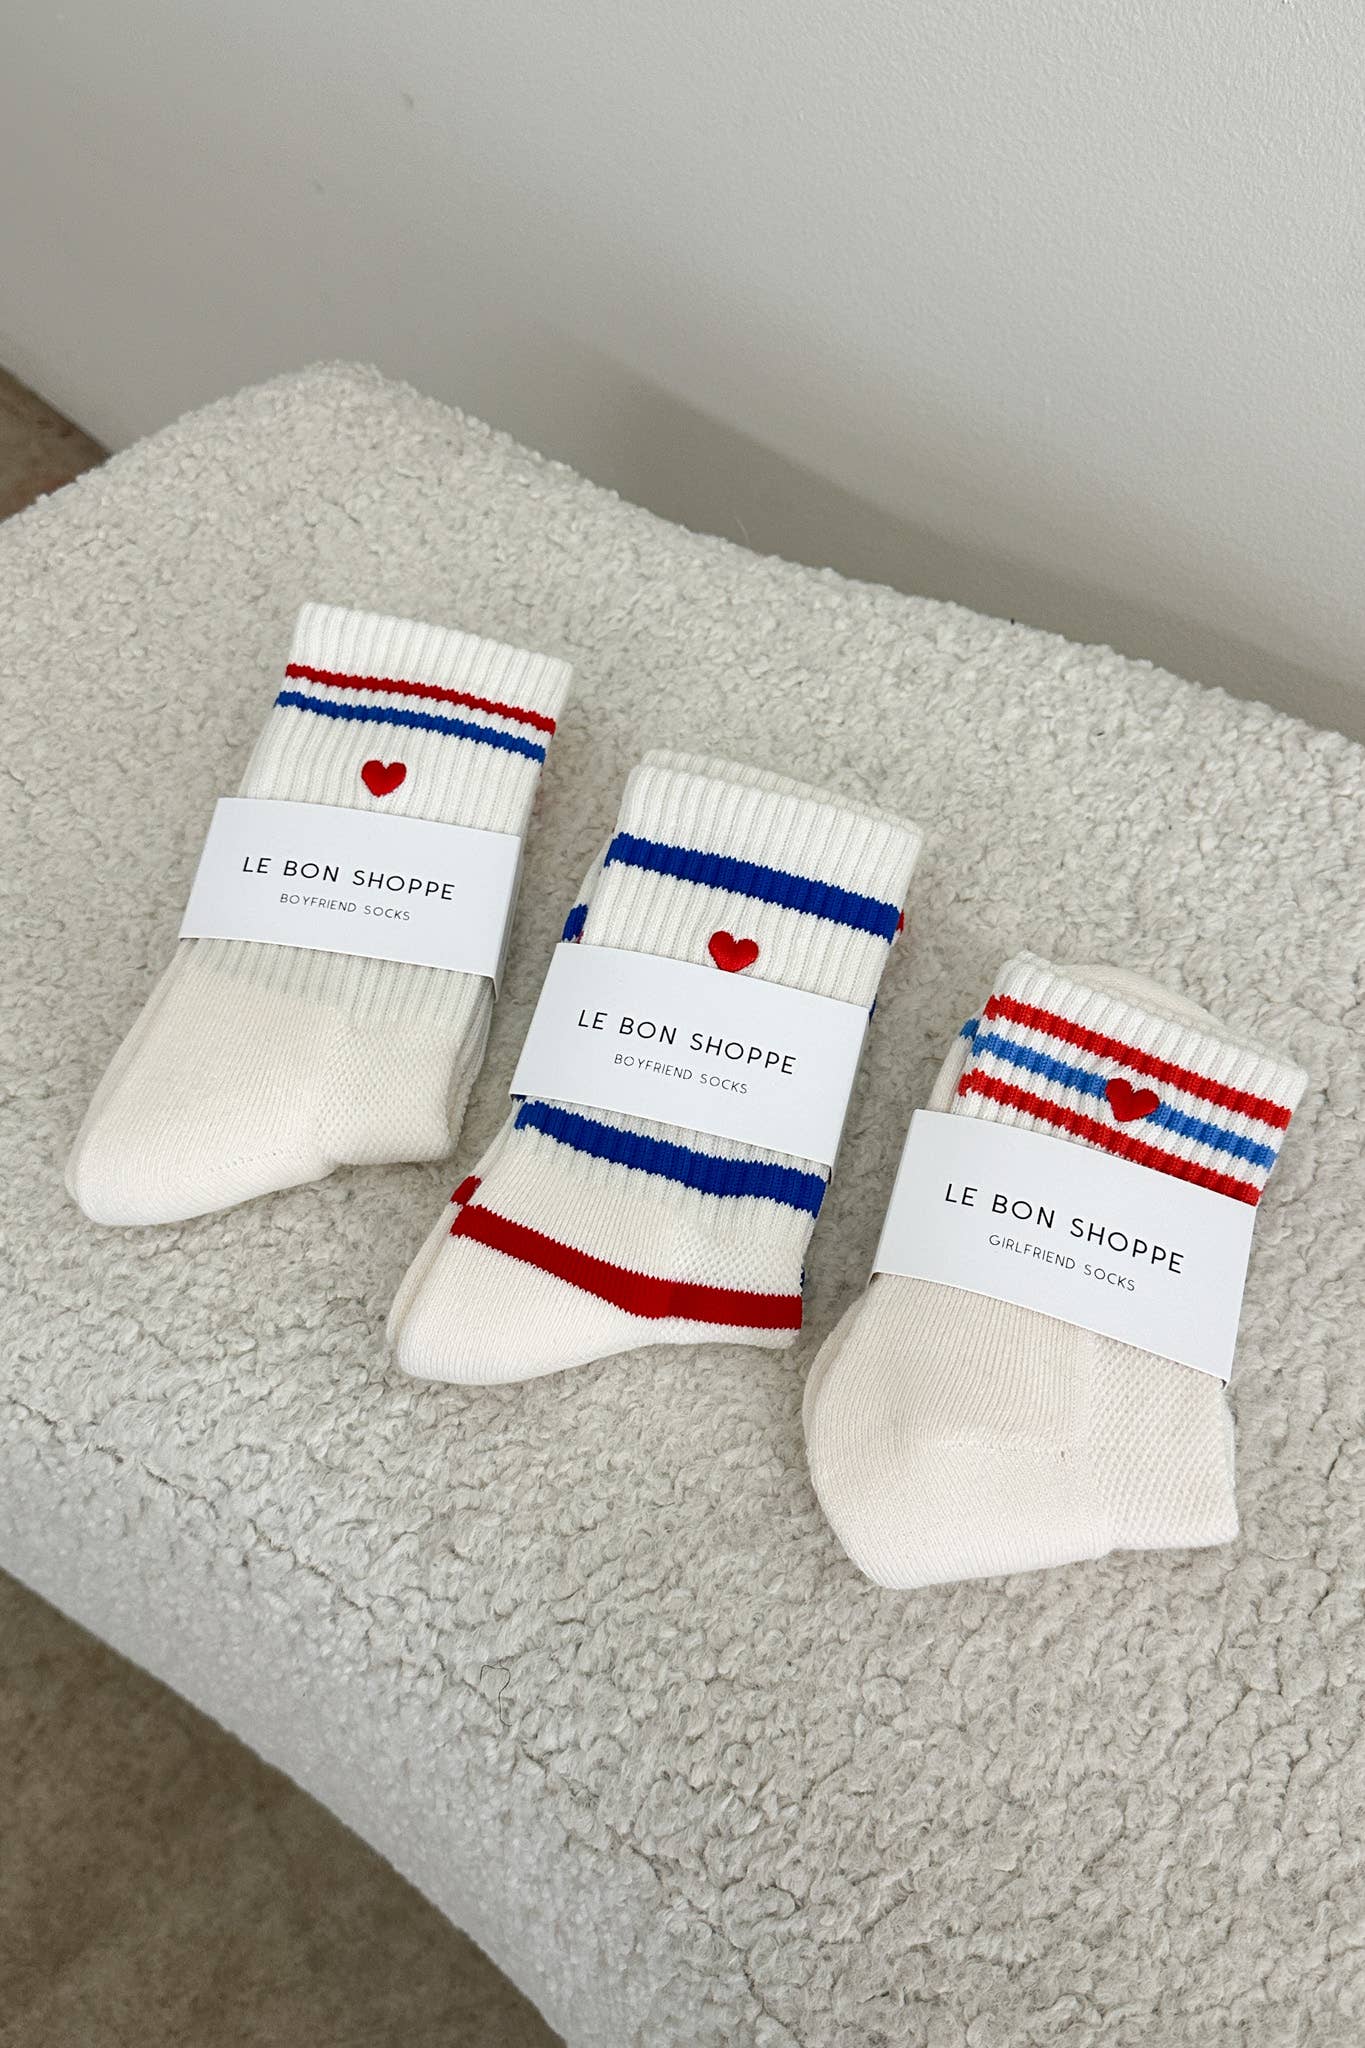 Embroidered Boyfriend socks, Milk Heart